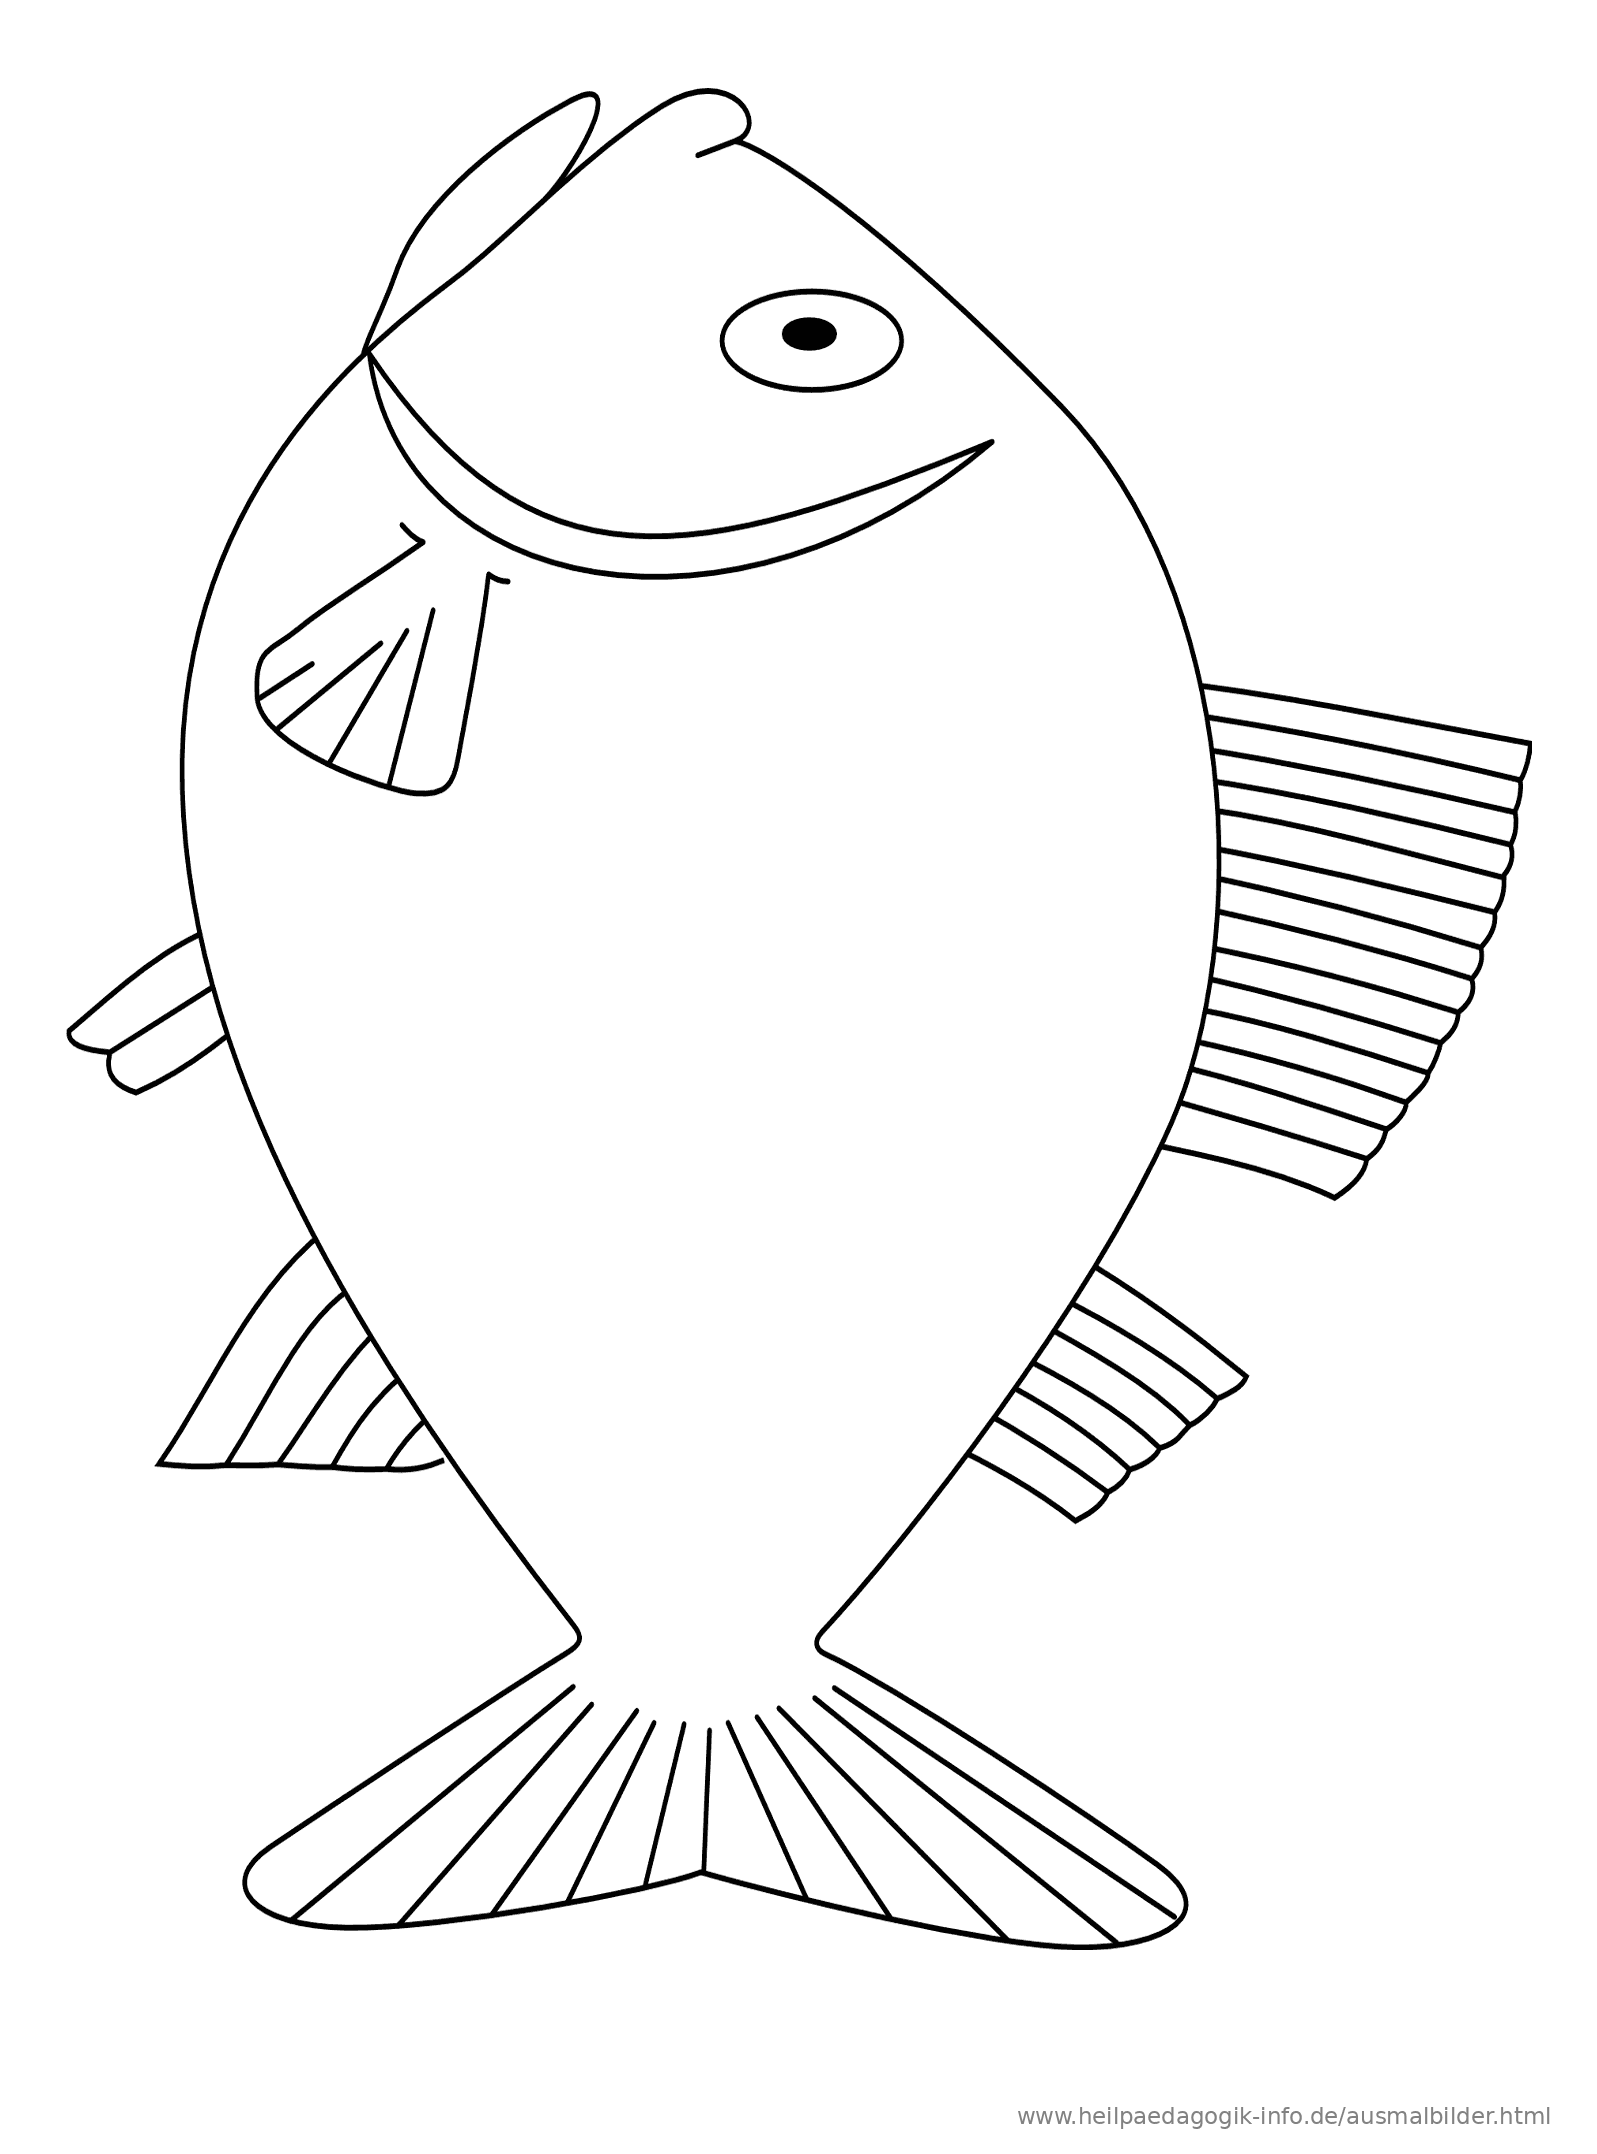 Ausgezeichnet Ausmalbilder Fische RM91